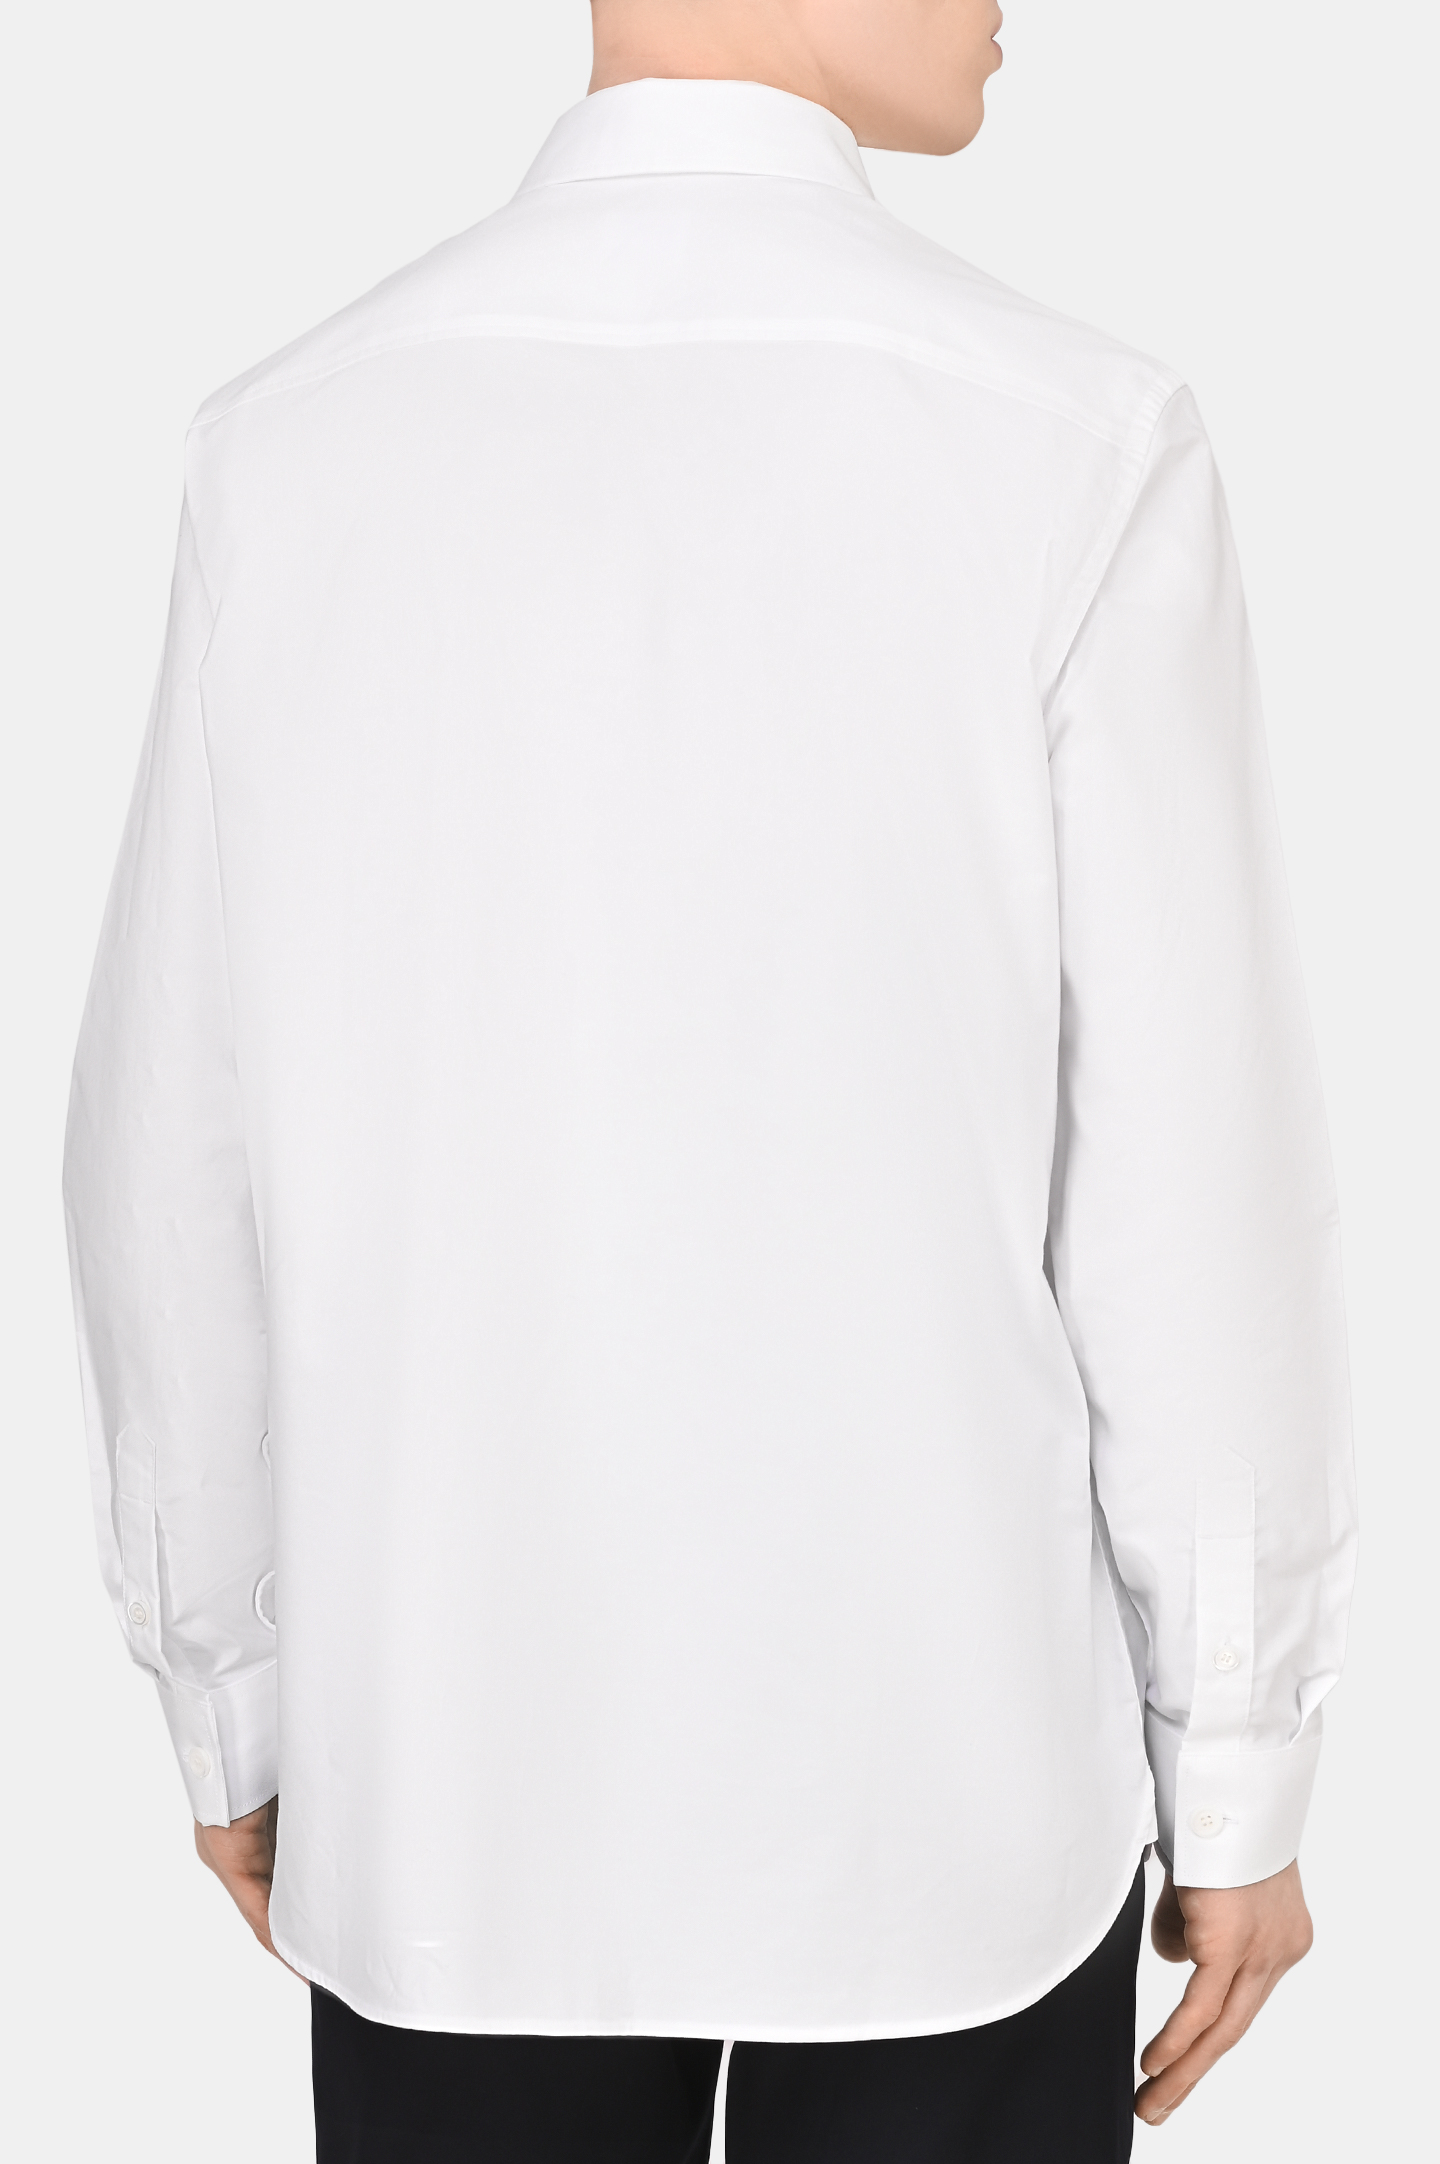 Рубашка BURBERRY 8050134, цвет: Белый, Мужской